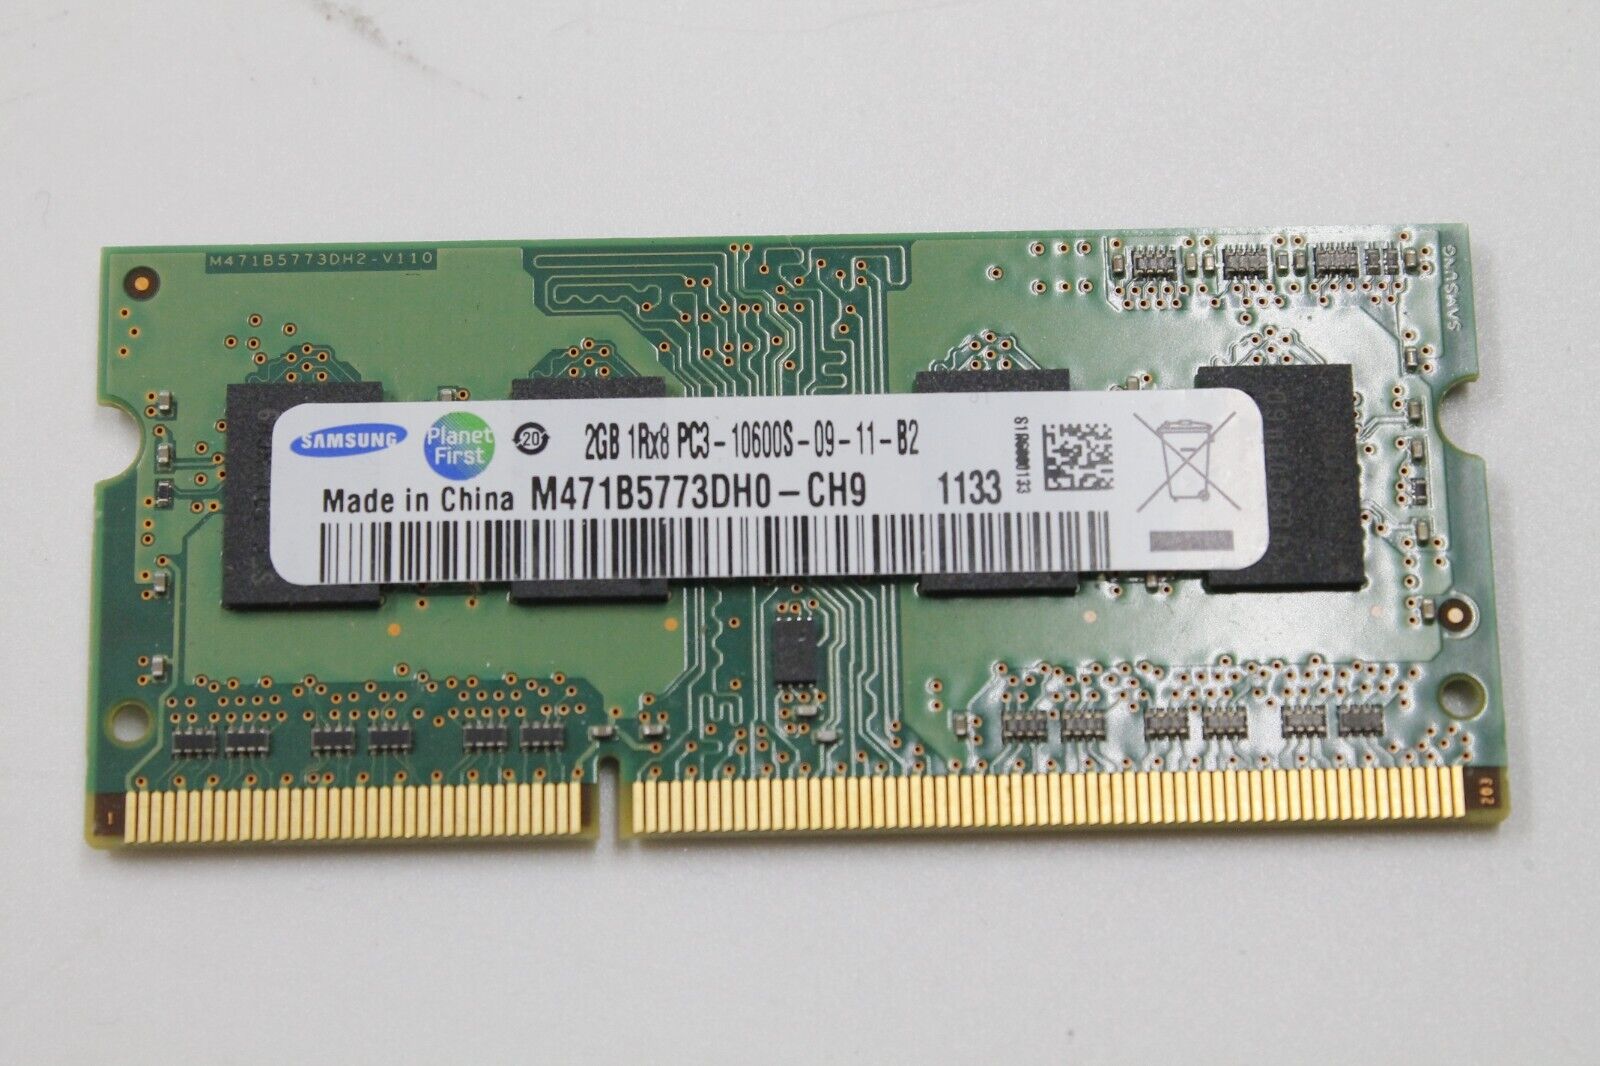 Samsung M471B5773DH0-CH9 2GB PC3-10600S-09-11-B2 DDR3-1333MHz RAM